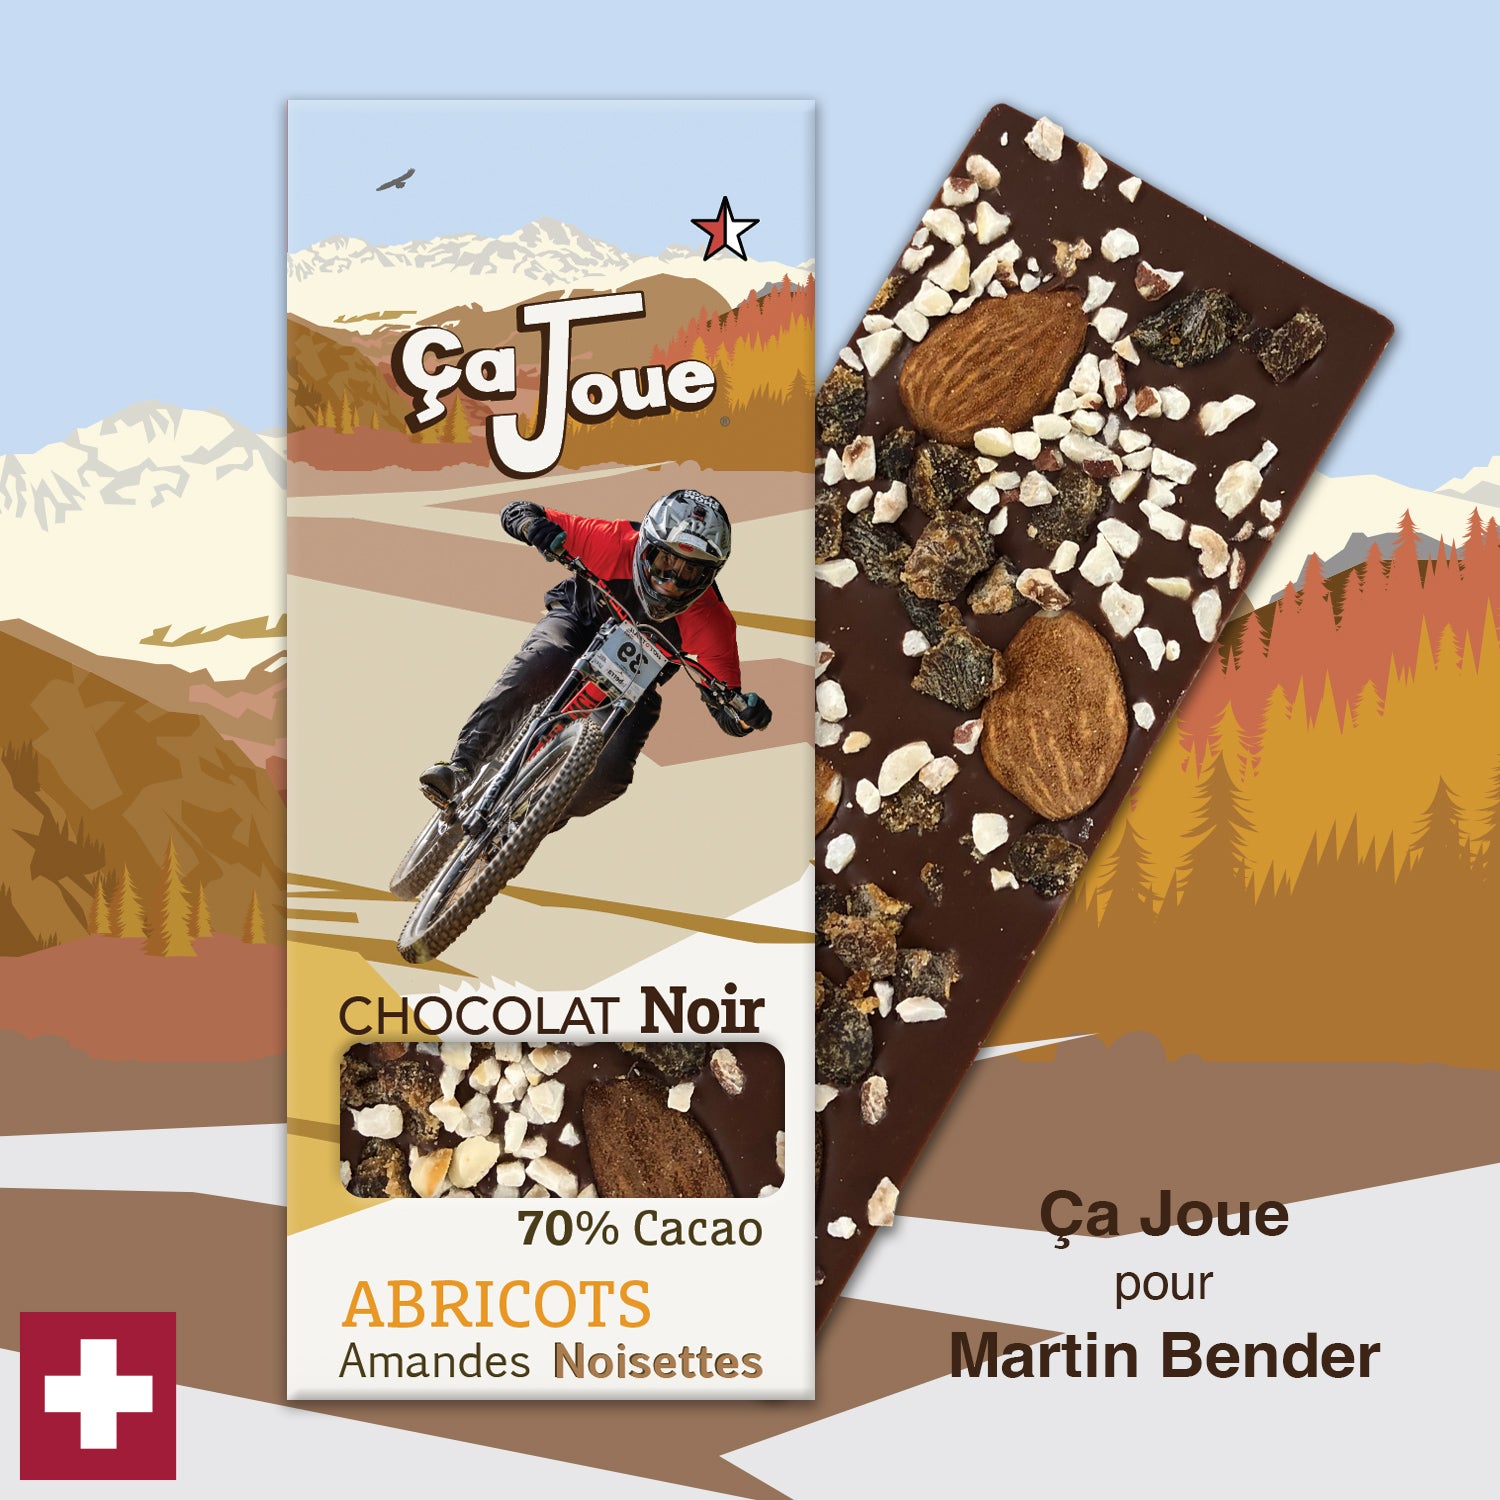 Ça Joue für Martin Bender (Ref-BN12) Schokolade aus Val de Bagnes